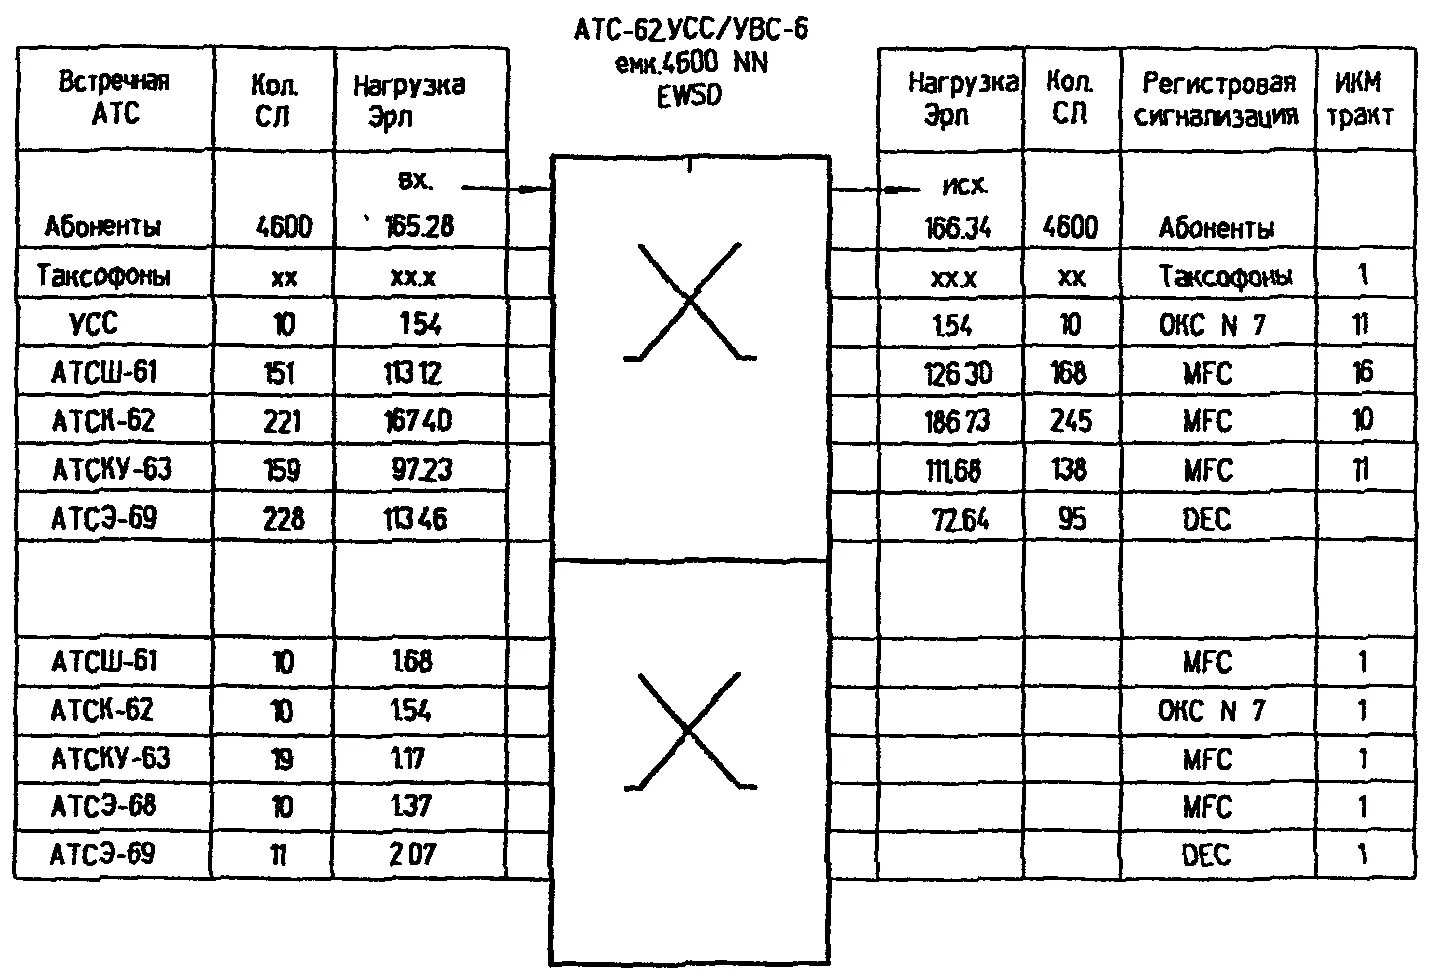 Кроссировочная таблица. Кроссировочная таблица СКС. Пример выполнения таблицы кроссировочных соединений. Оформление кроссировочной таблицы. Нагрузка атс